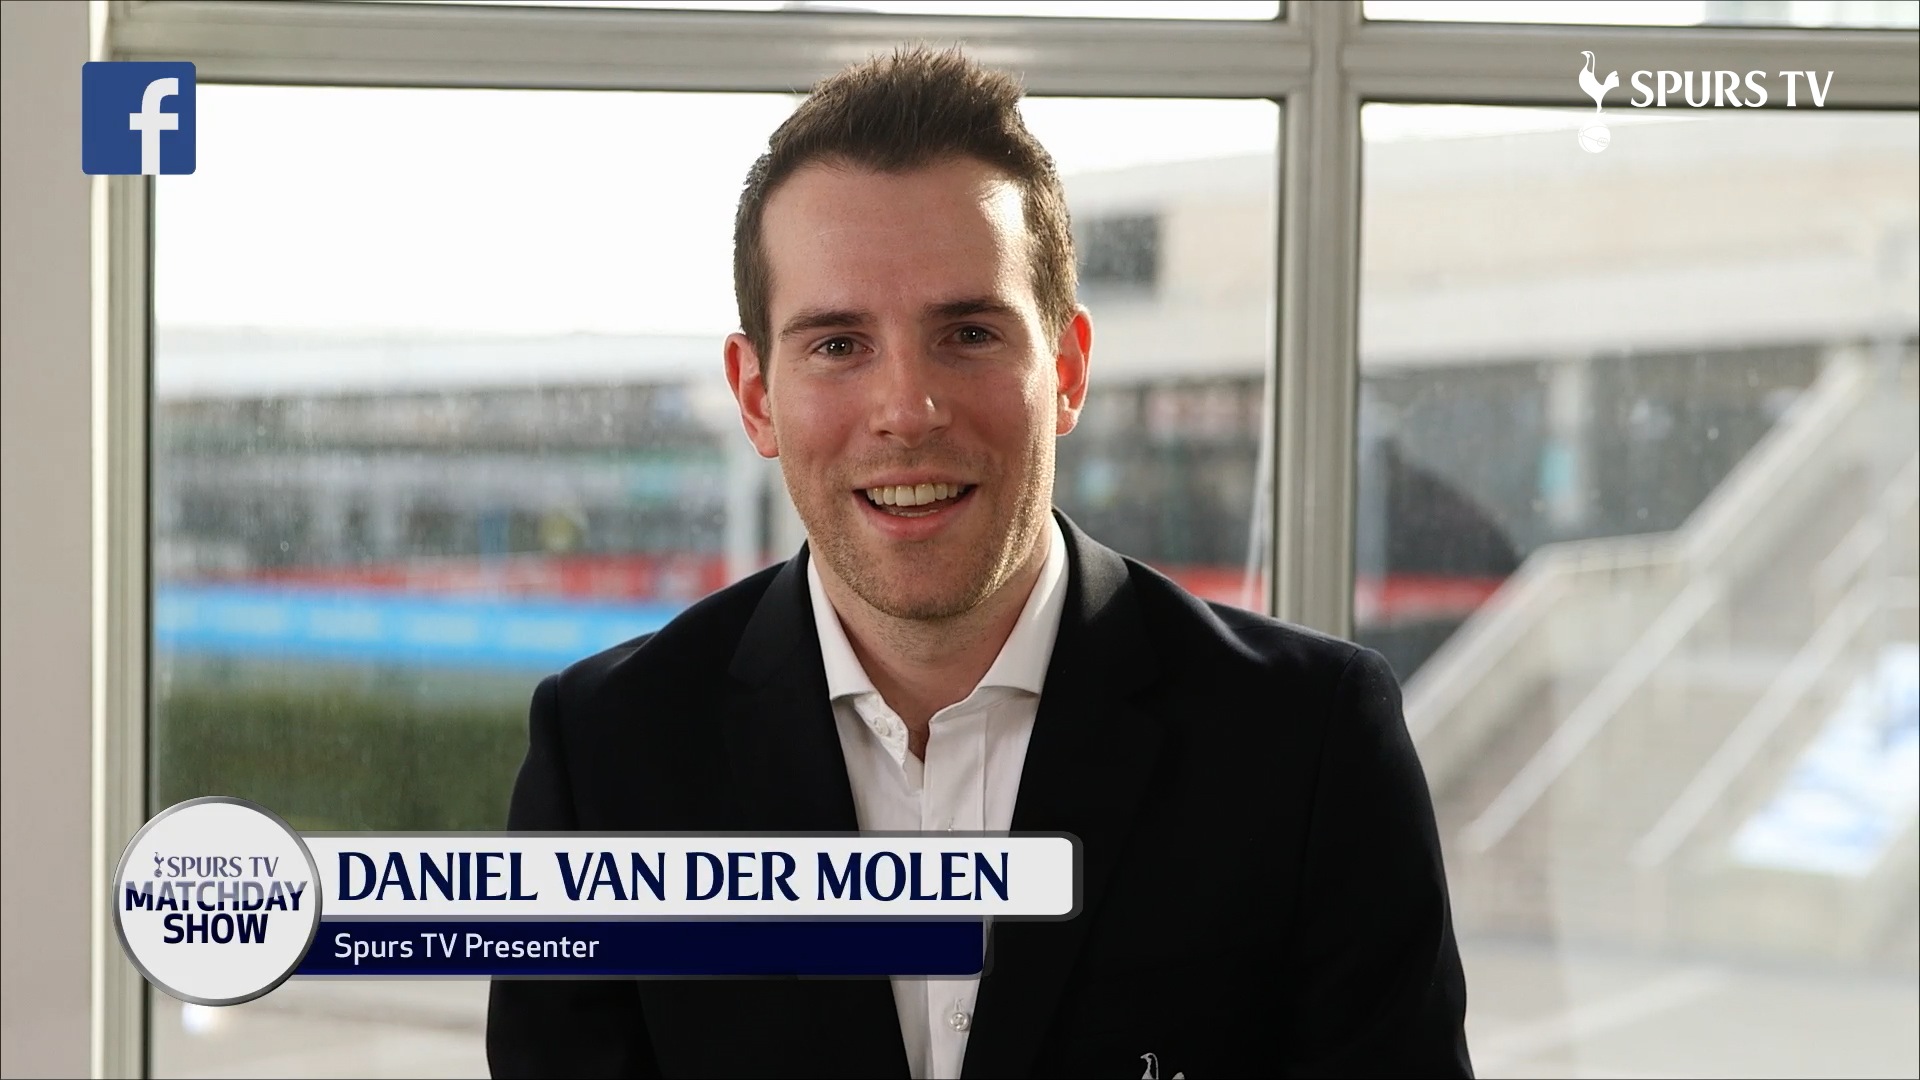 2015: Spurs TV Match Day Show (League Cup final) - Daniel van der Molen opening link.